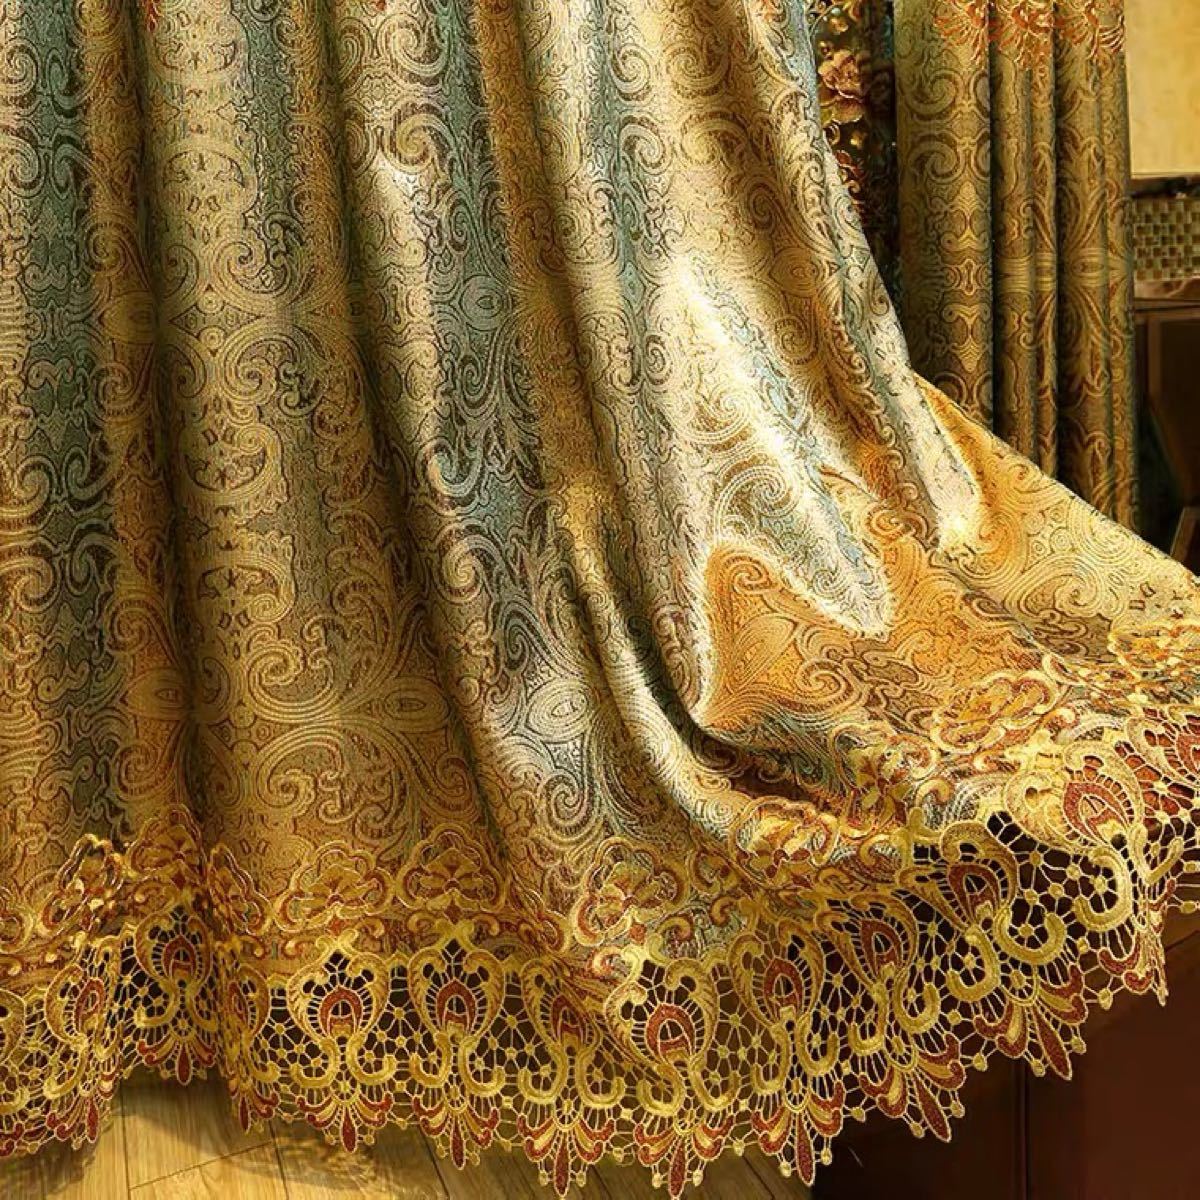 ドレープカーテン レースカーテン オーダーサイズ ゴールド 花柄 ゴージャス きれい おしゃれ カーテン幅 縦 ヨーロッパ風